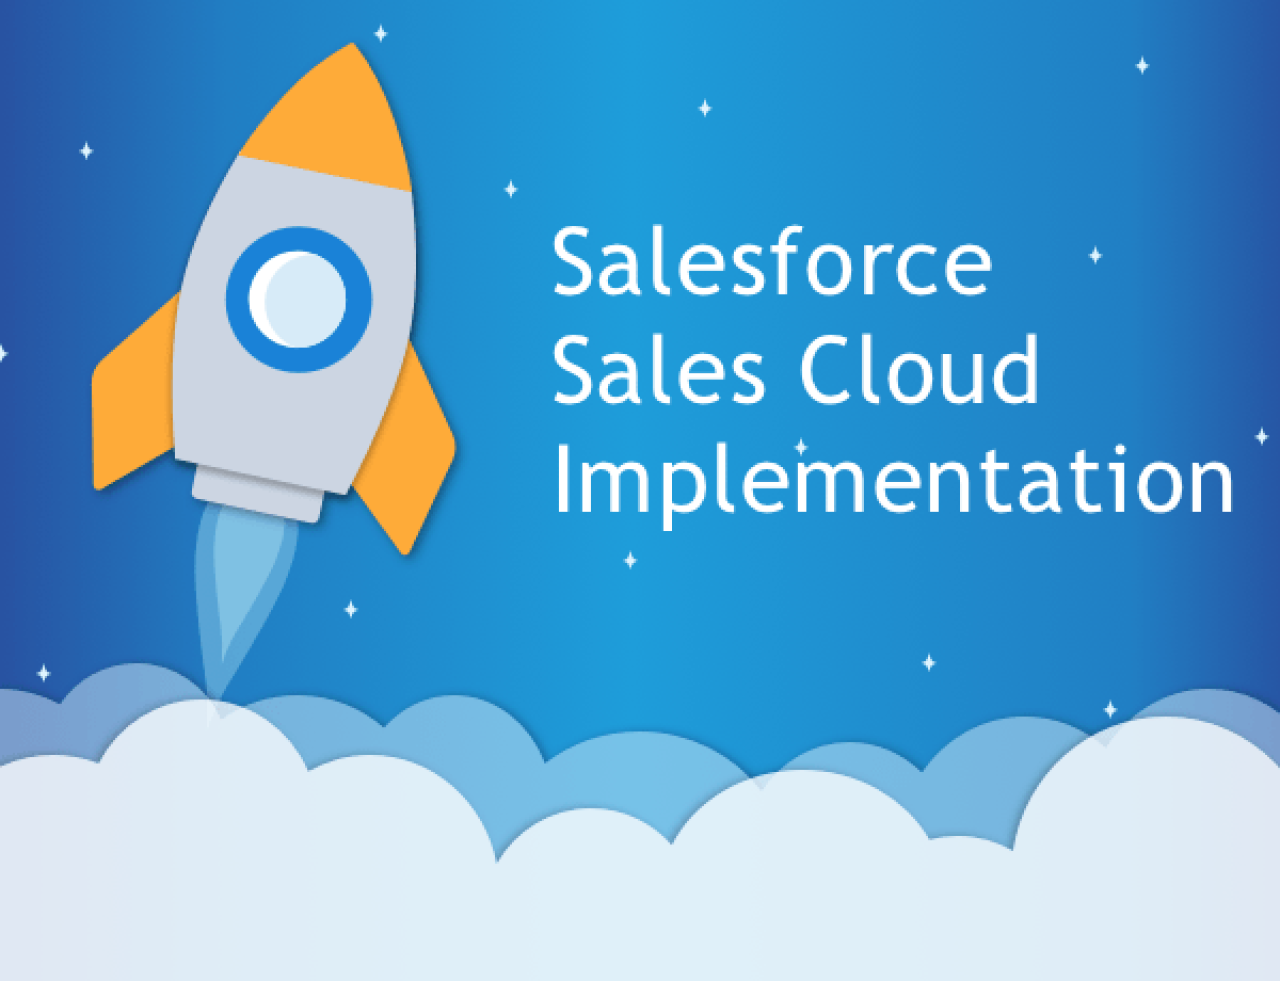 salesforce sales cloud implementation.